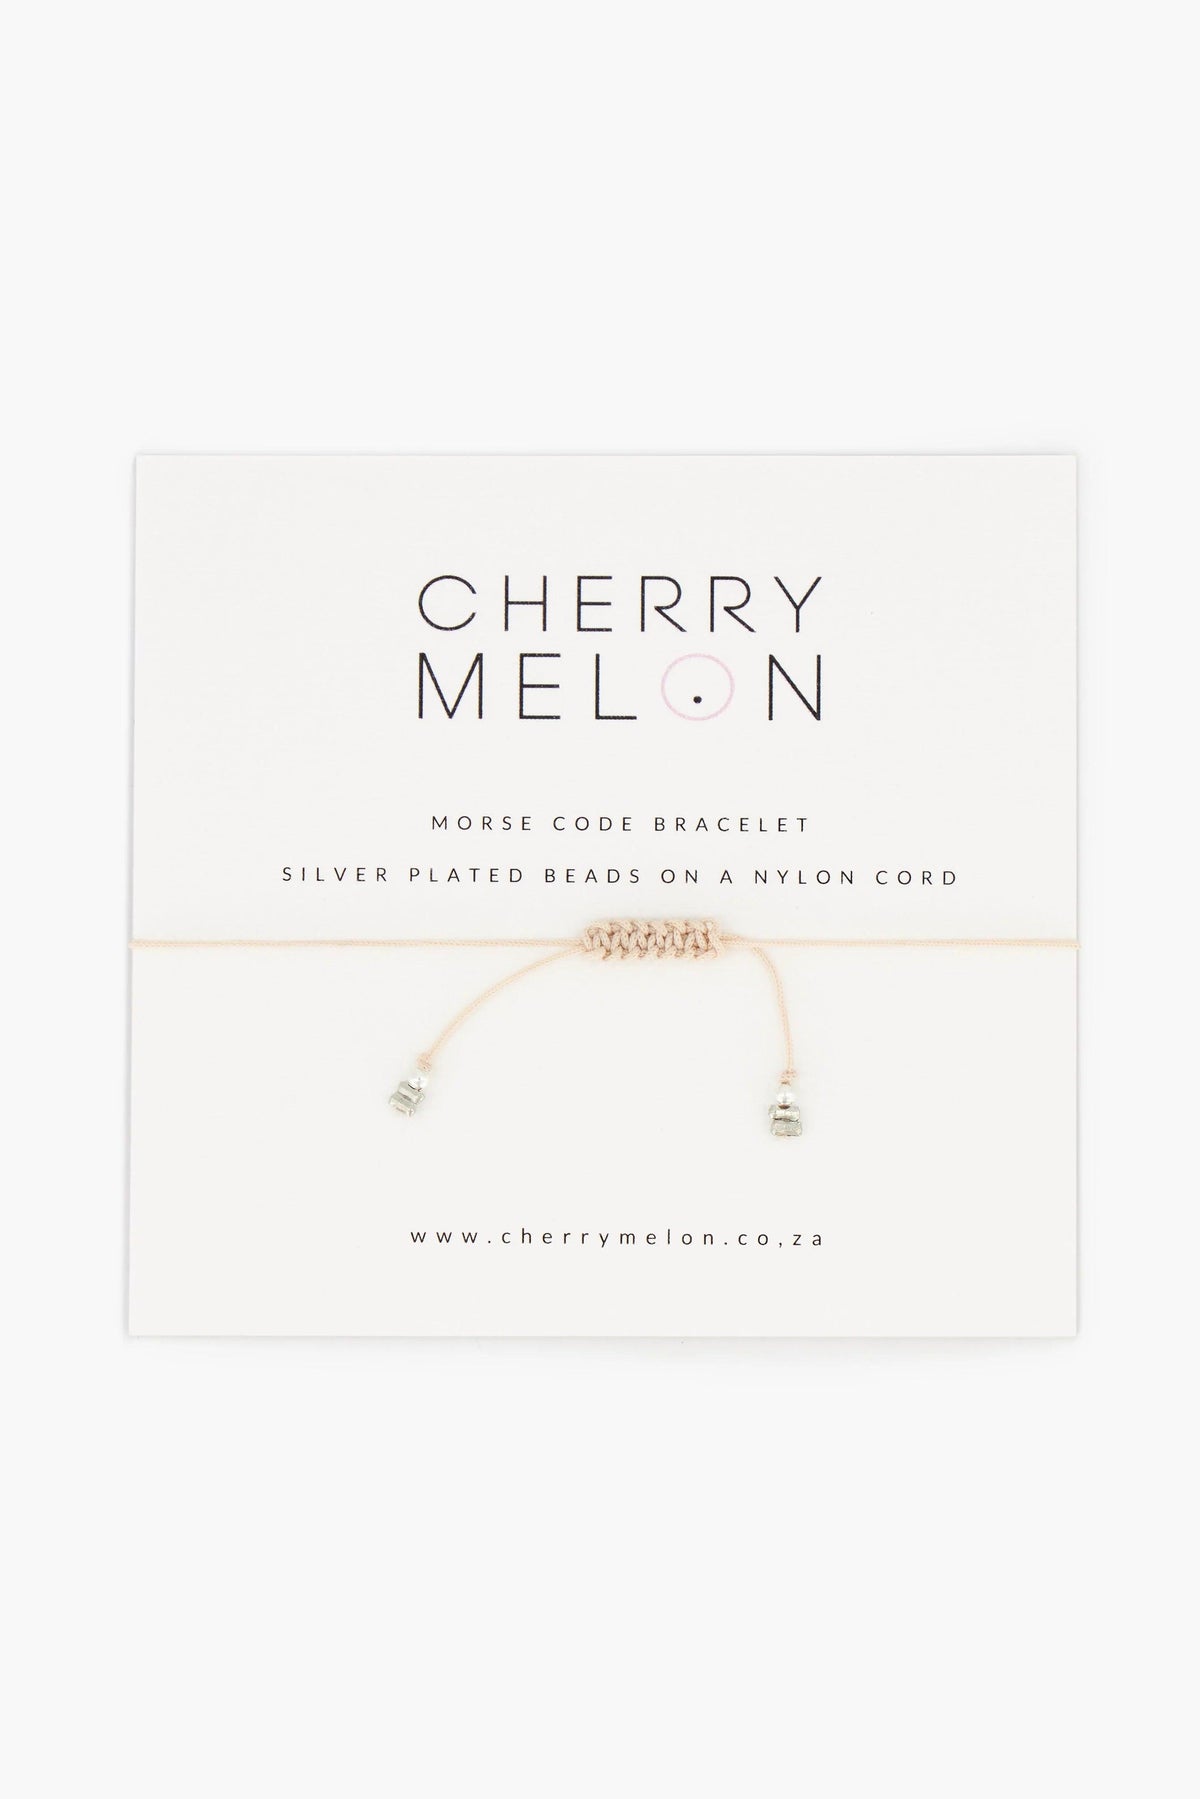 Morse Code Bracelet “Blessed” - Cherry Melon